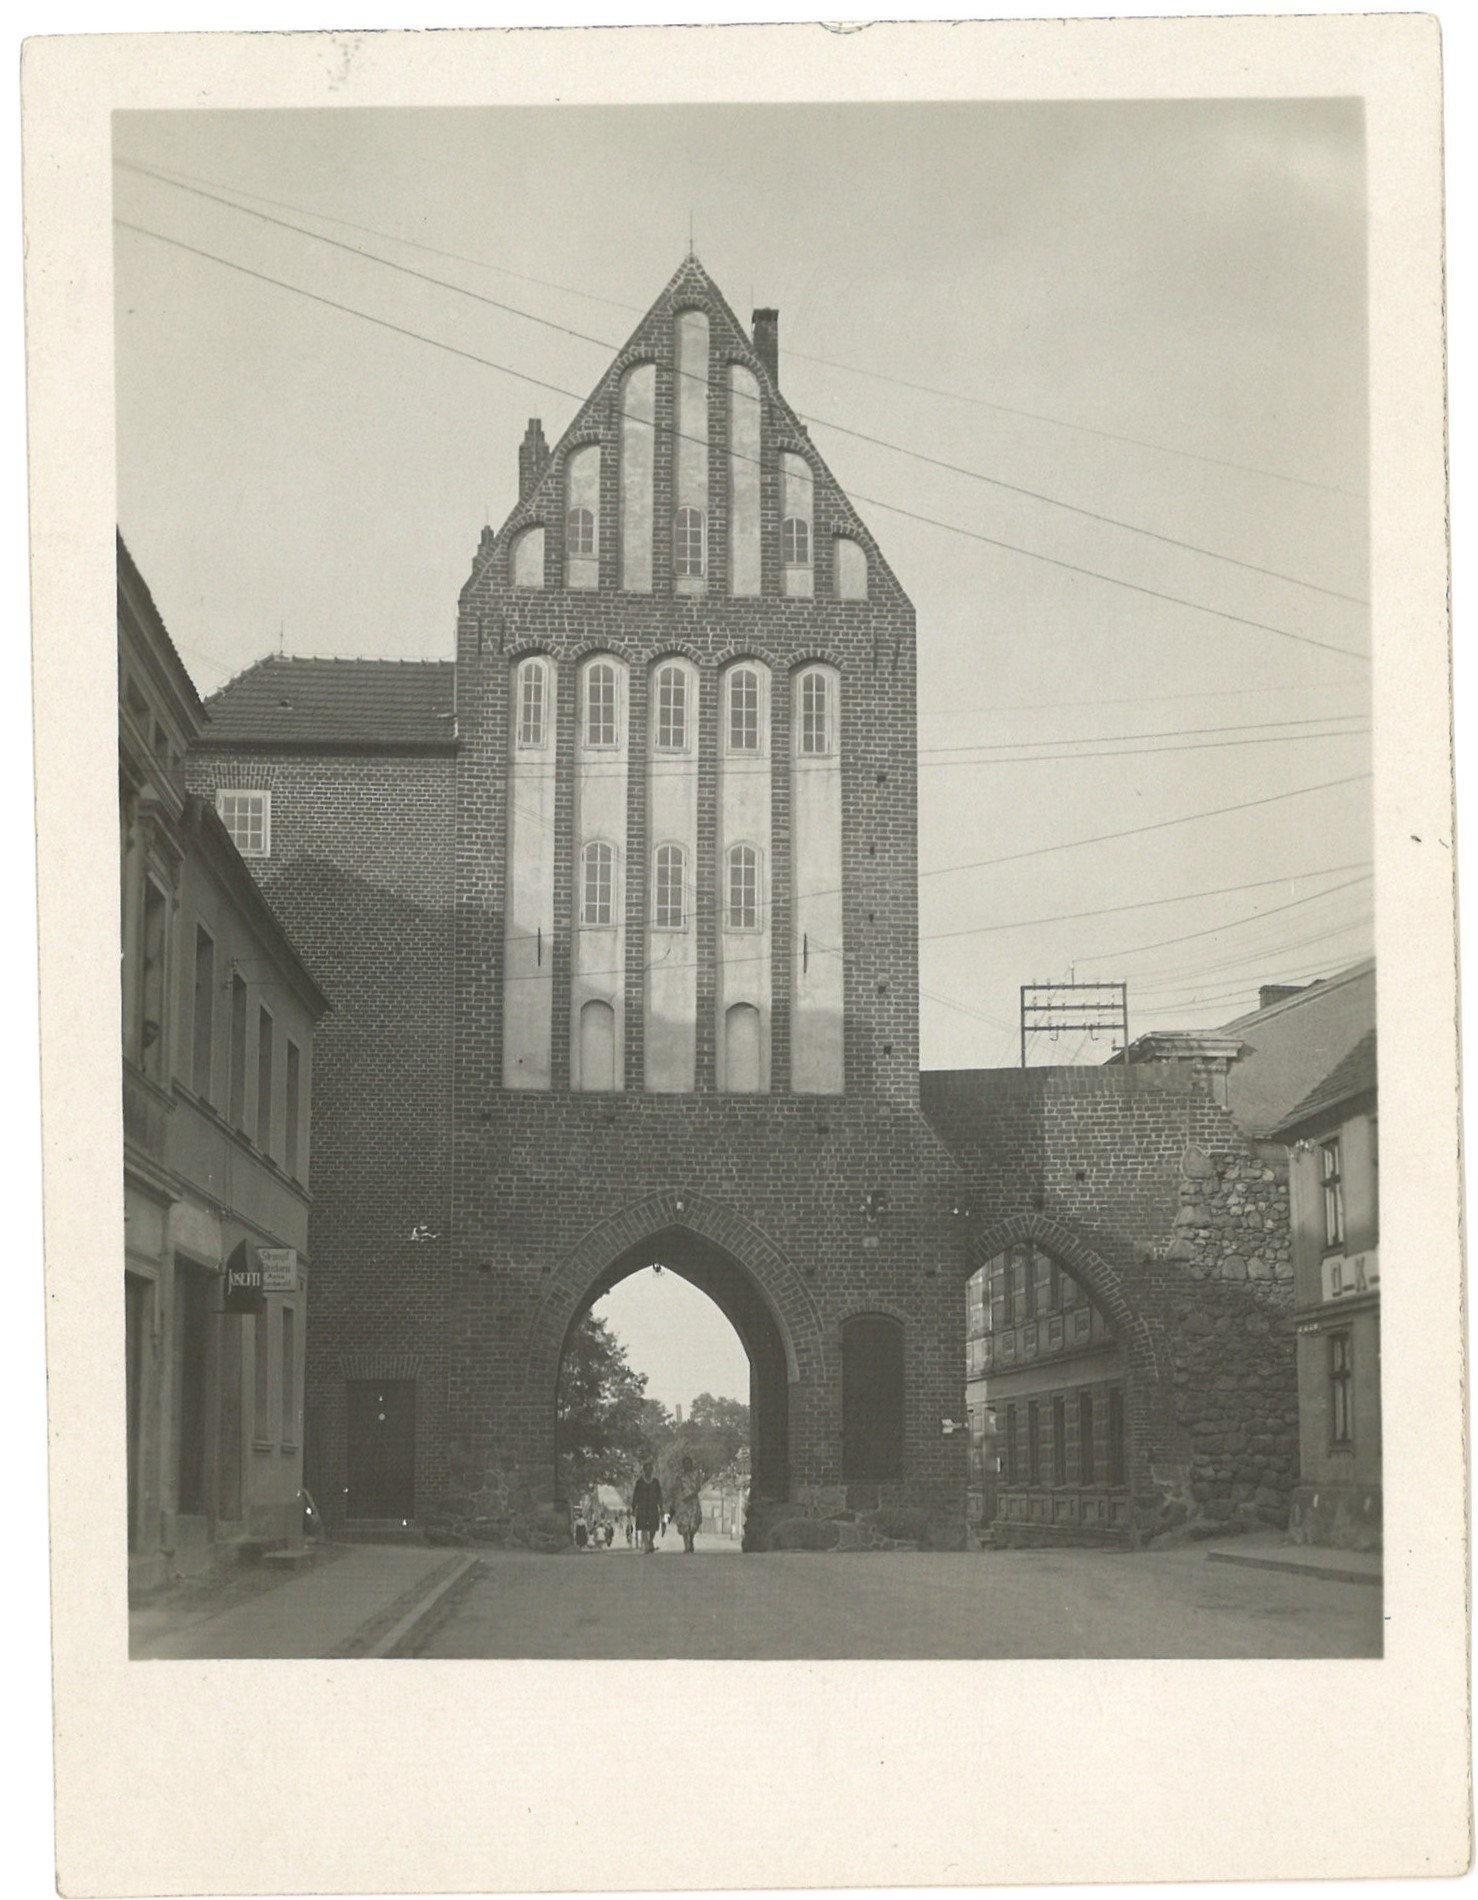 Friedeberg/Neumark / Strzelce Krajeńskie: Driesener Tor (Stadtseite) (Landesgeschichtliche Vereinigung für die Mark Brandenburg e.V., Archiv CC BY)